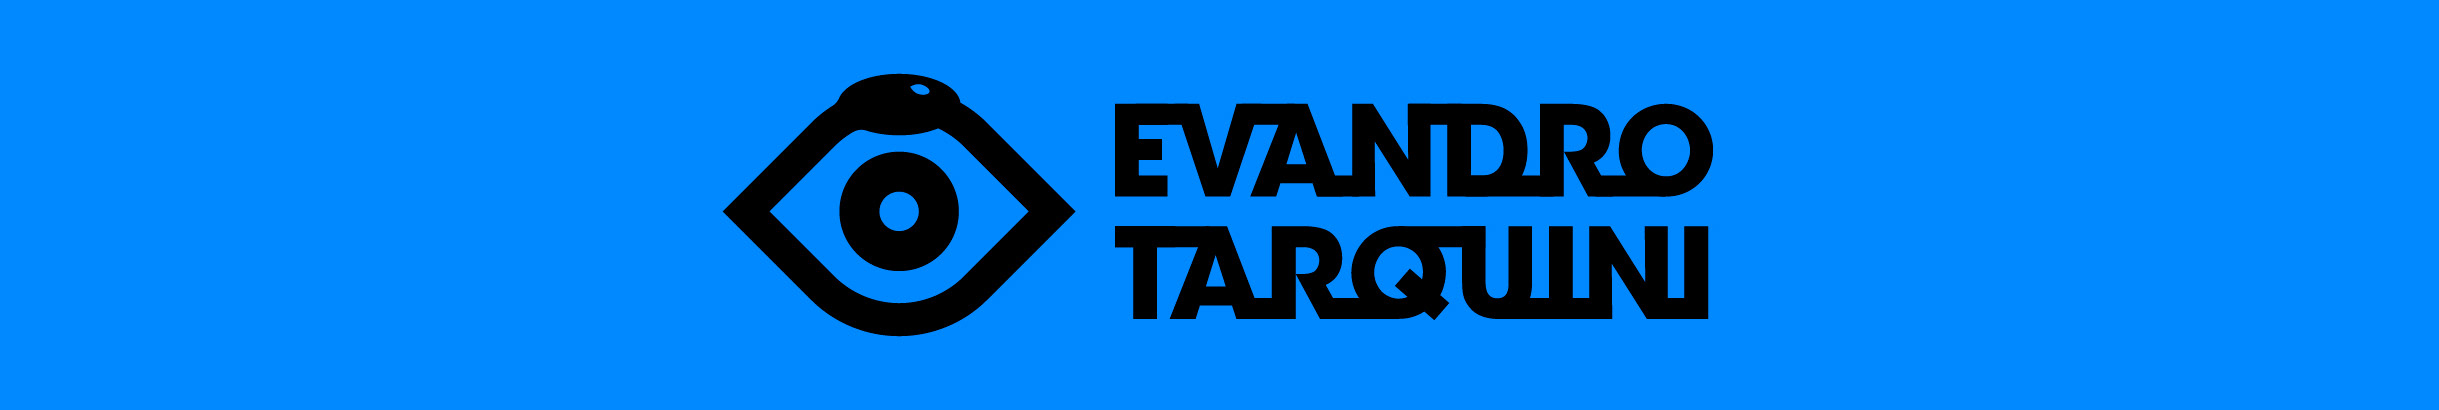 Evandro Tarquini's profile banner